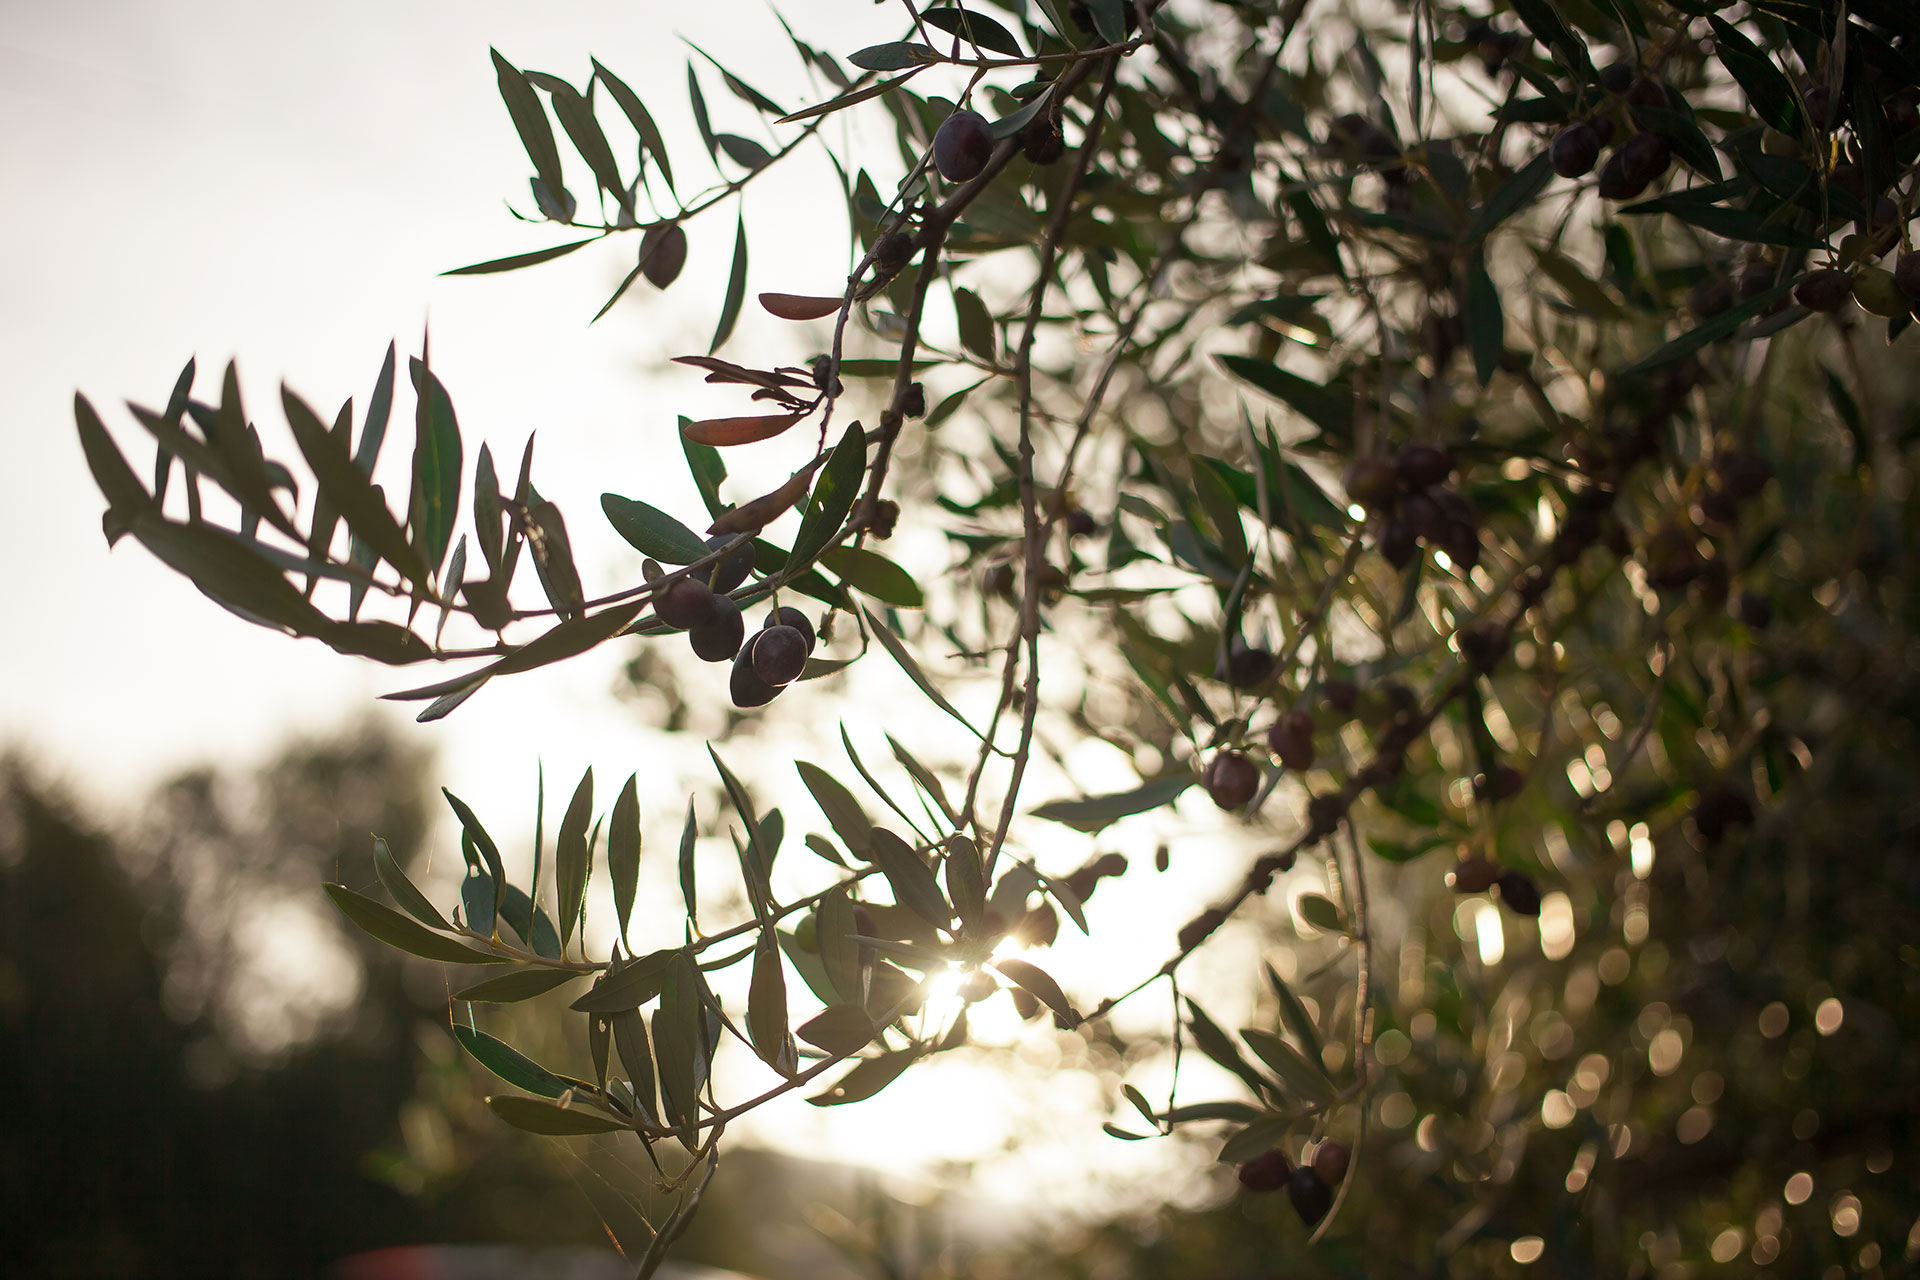 Oblivion Olivenöl - Olivenzweige eines Olivenbaumes, im Hintergrund der Sonnenuntergang